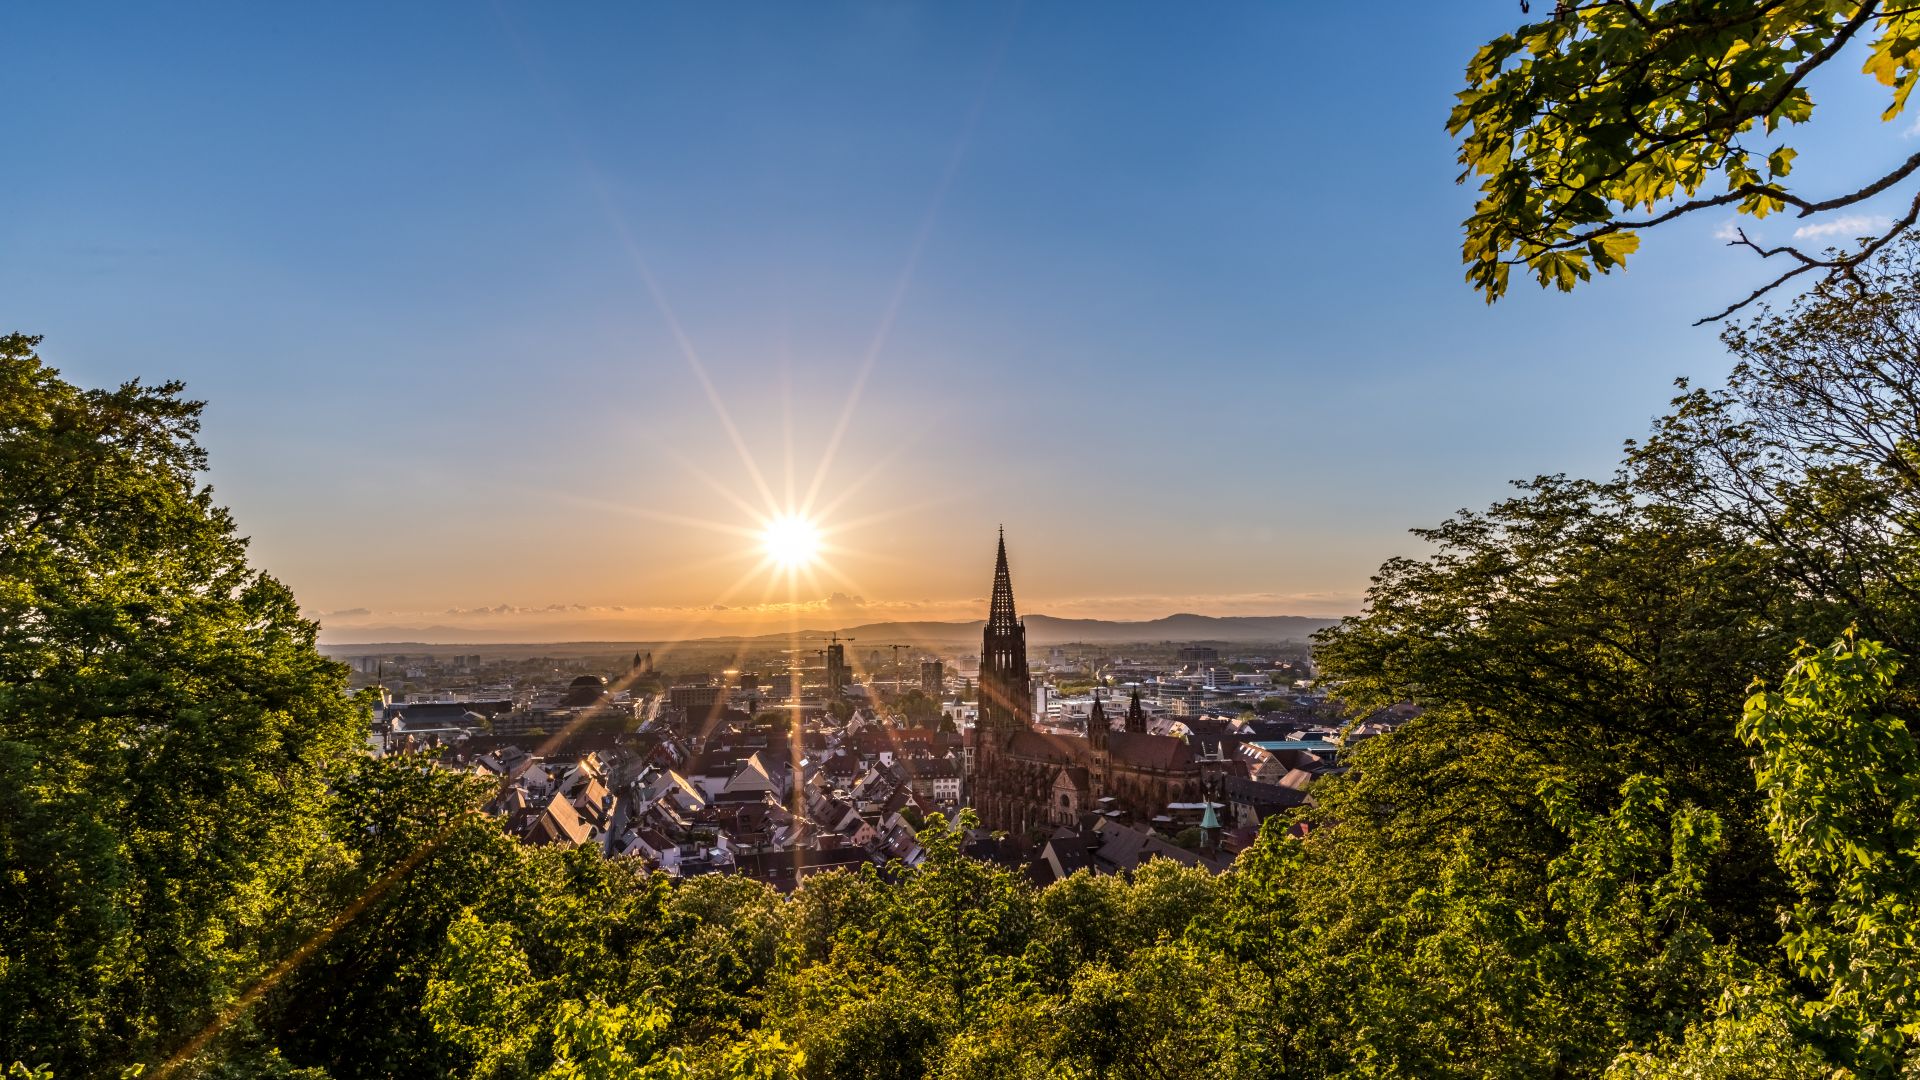 Freiburg im Breisgau: City view of the Freiburg Minster